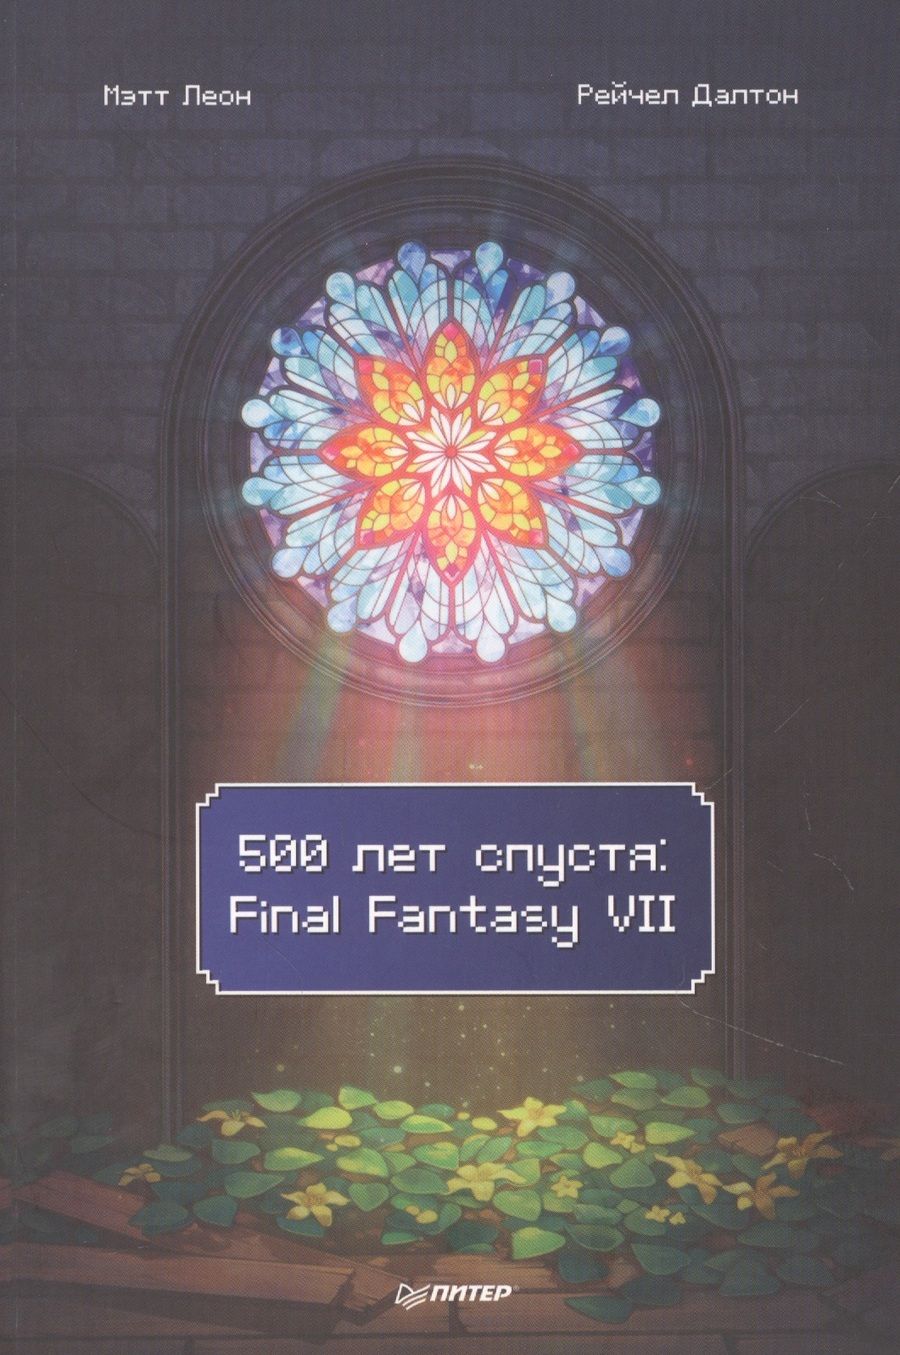 Обложка книги "Леон, Далтон: 500 лет спустя. Final Fantasy VII"